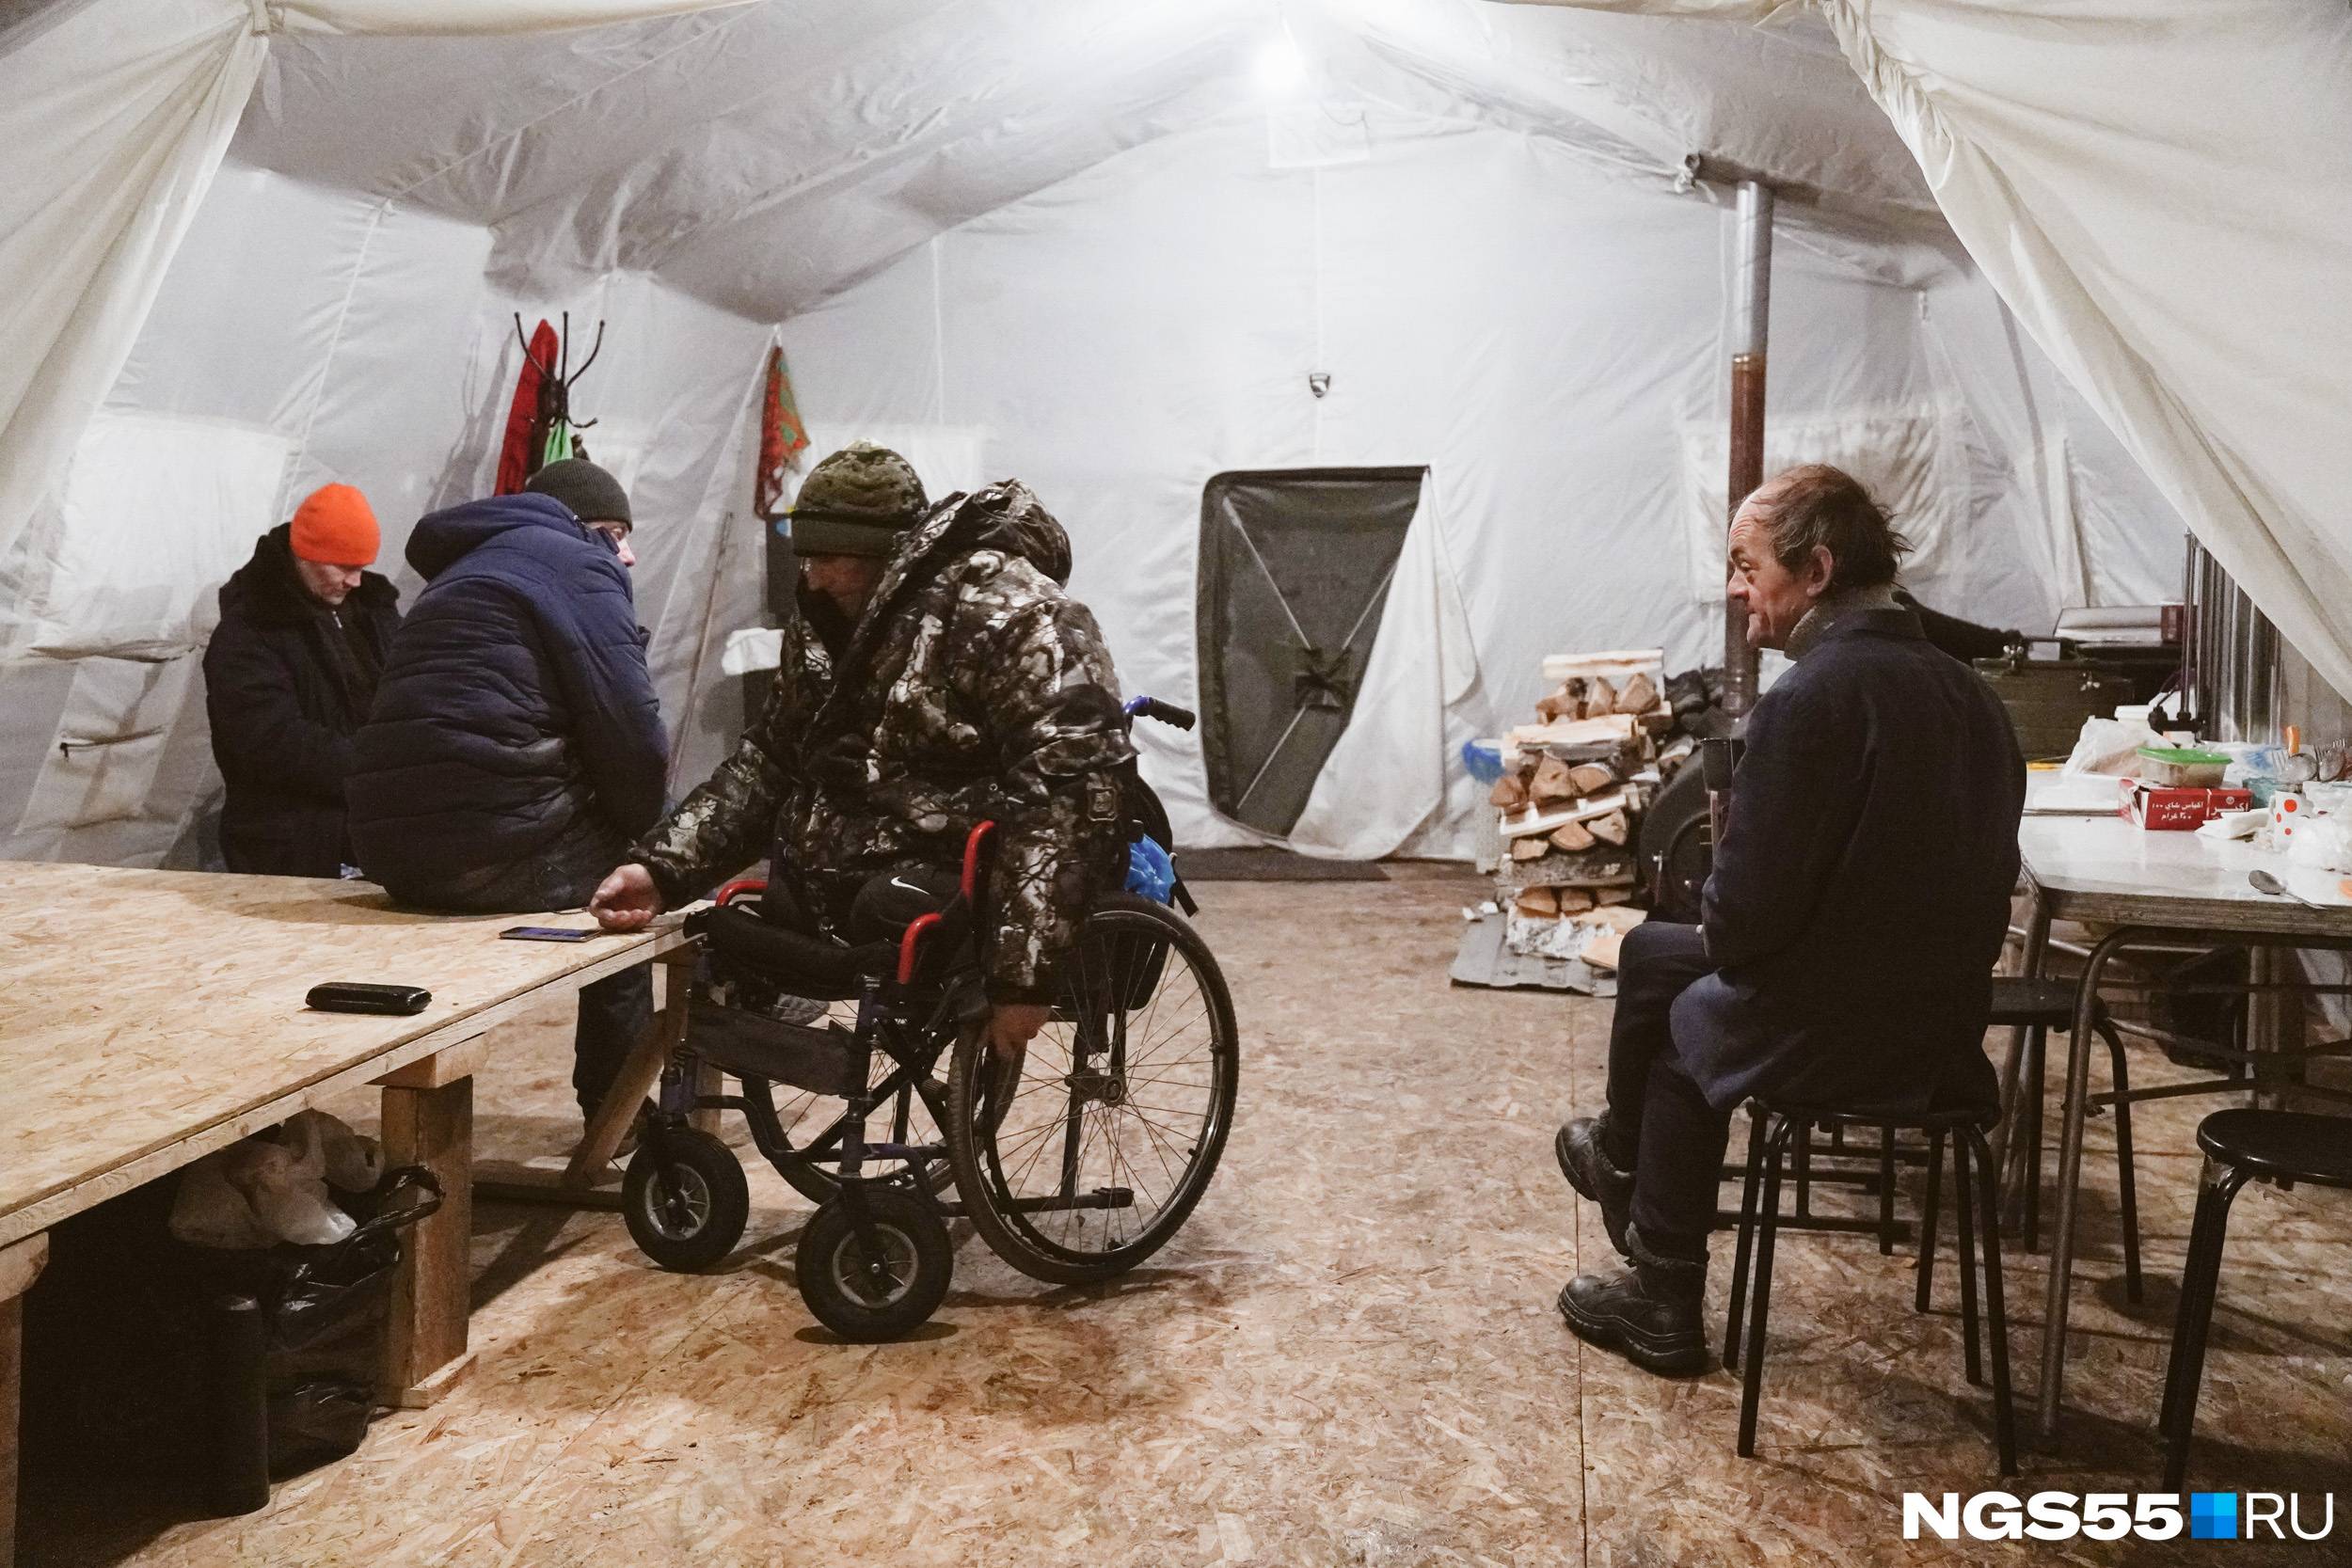 «Я людям вообще не верю»: как обогревают бездомных в палатке на краю Омска